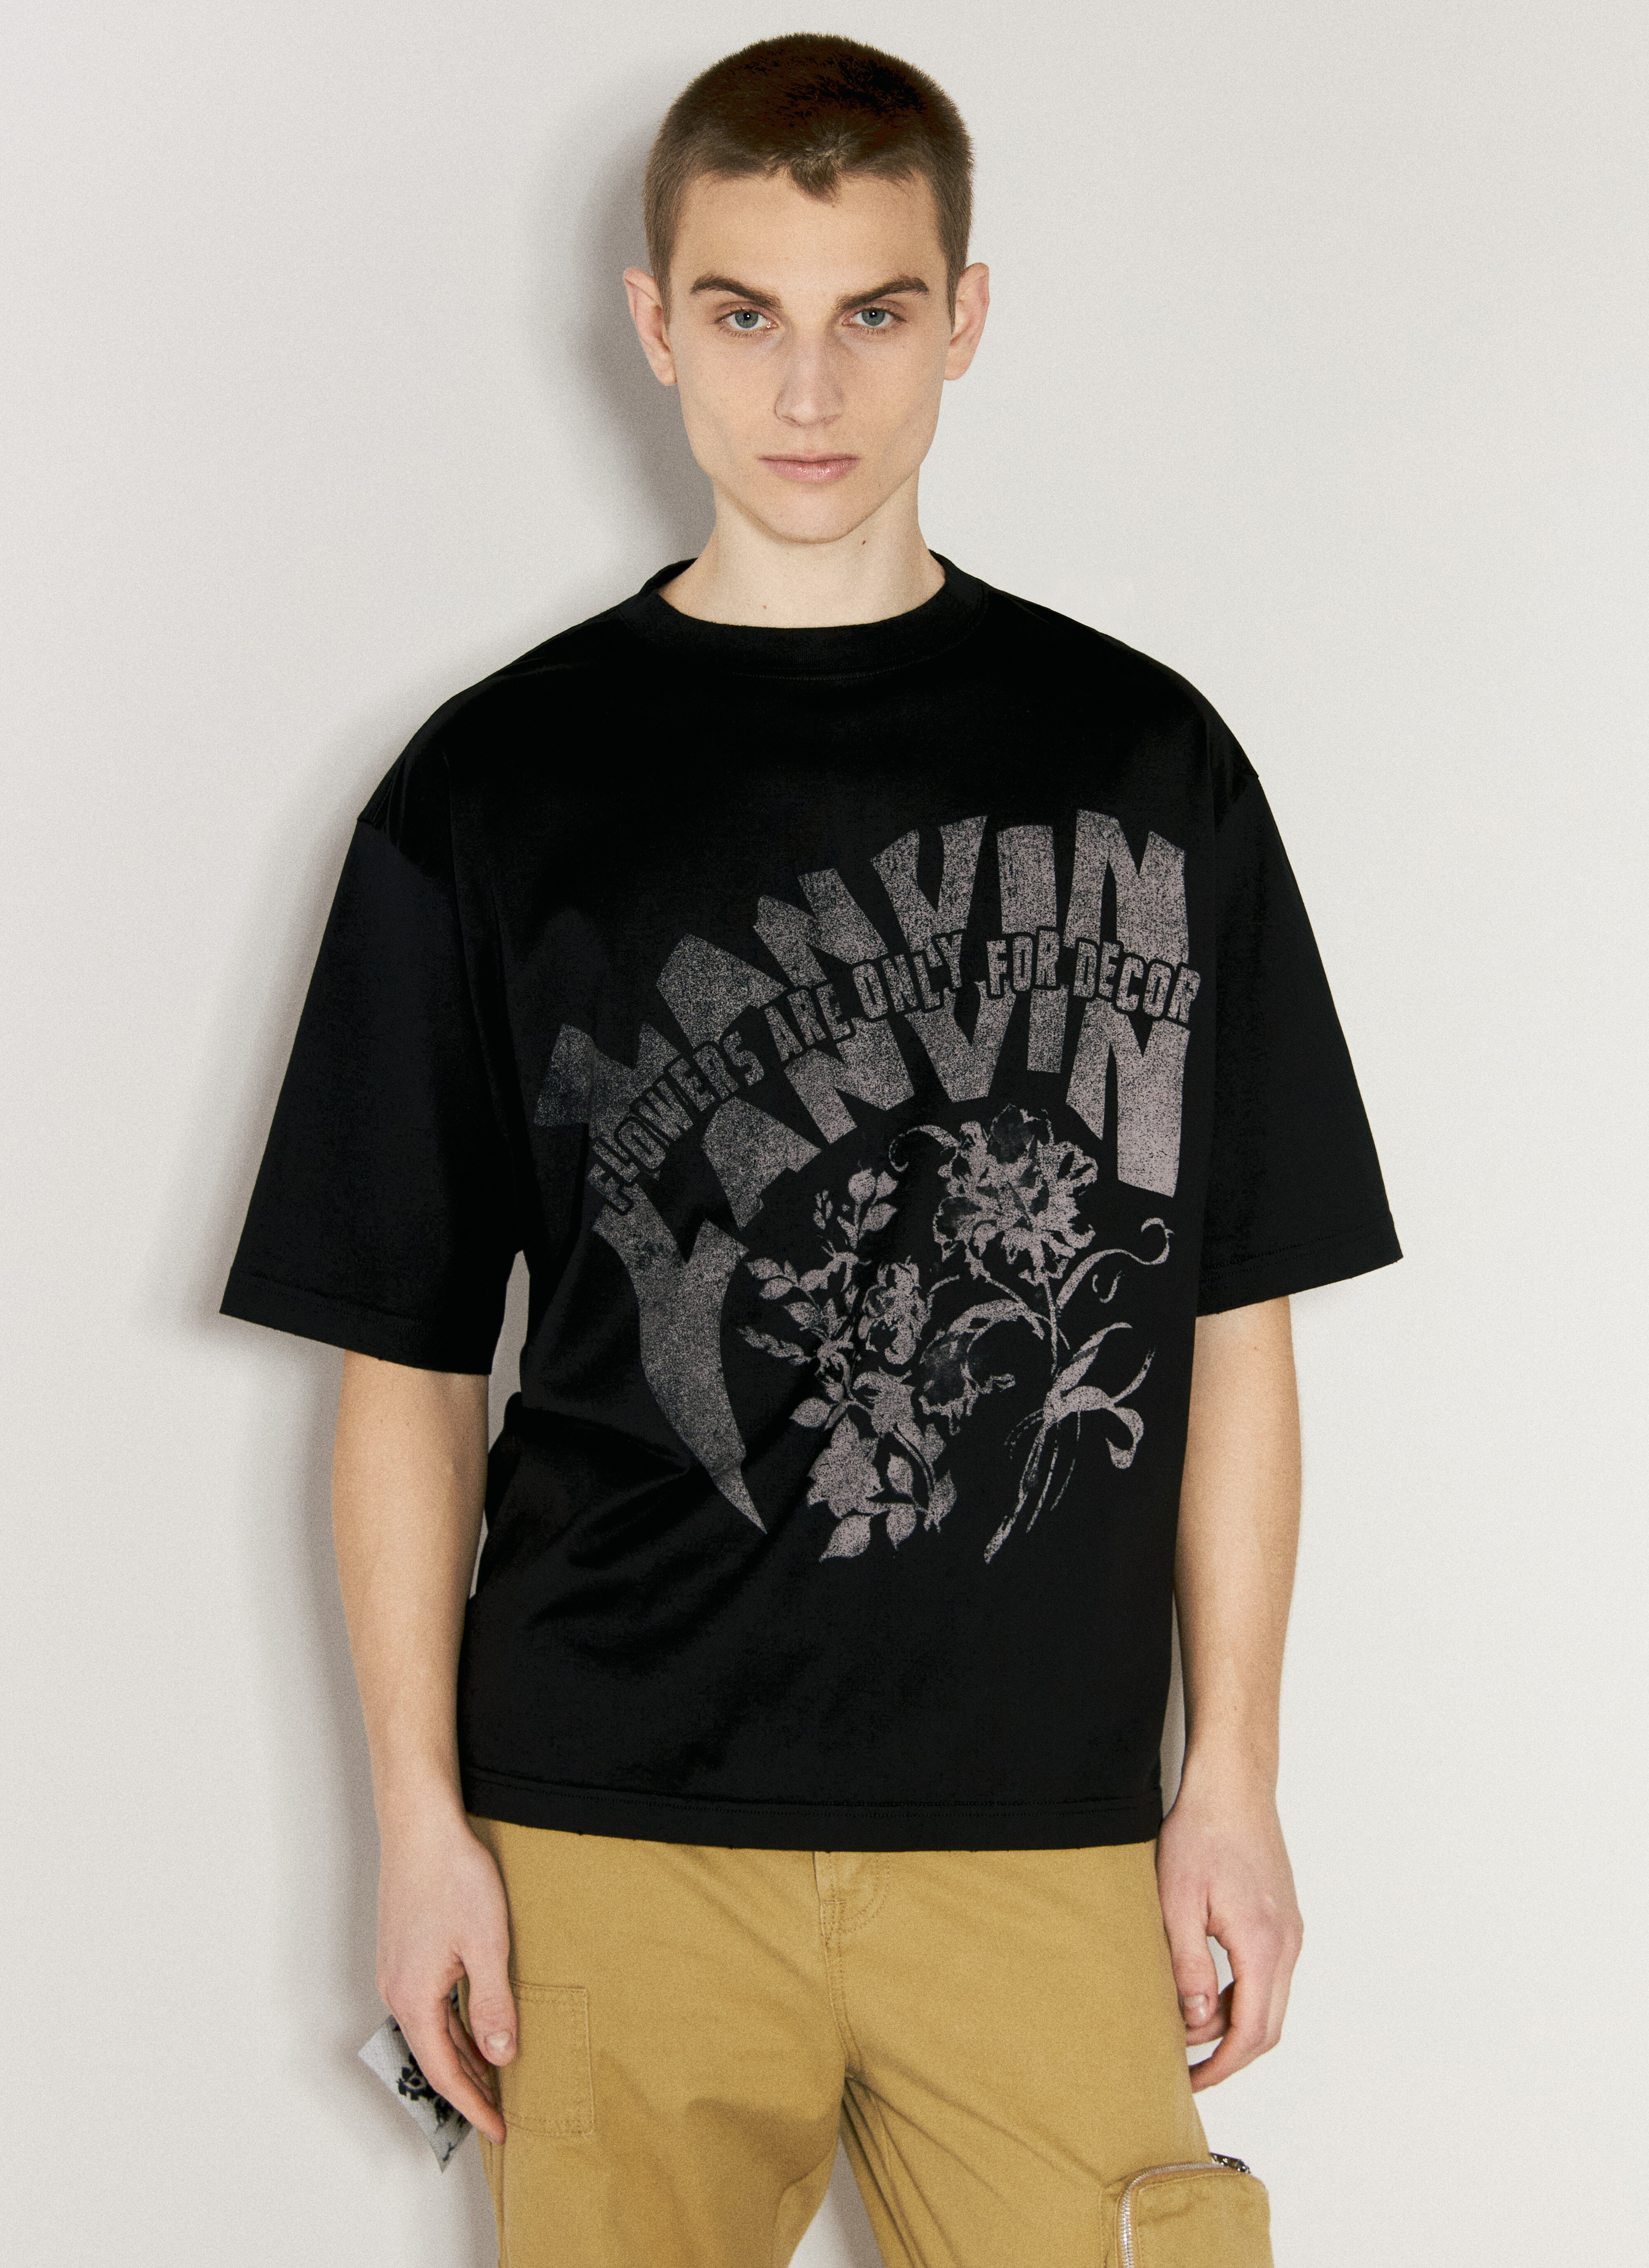 Lanvin x Future 로고 프린트 티셔츠  옐로우 lvf0157007